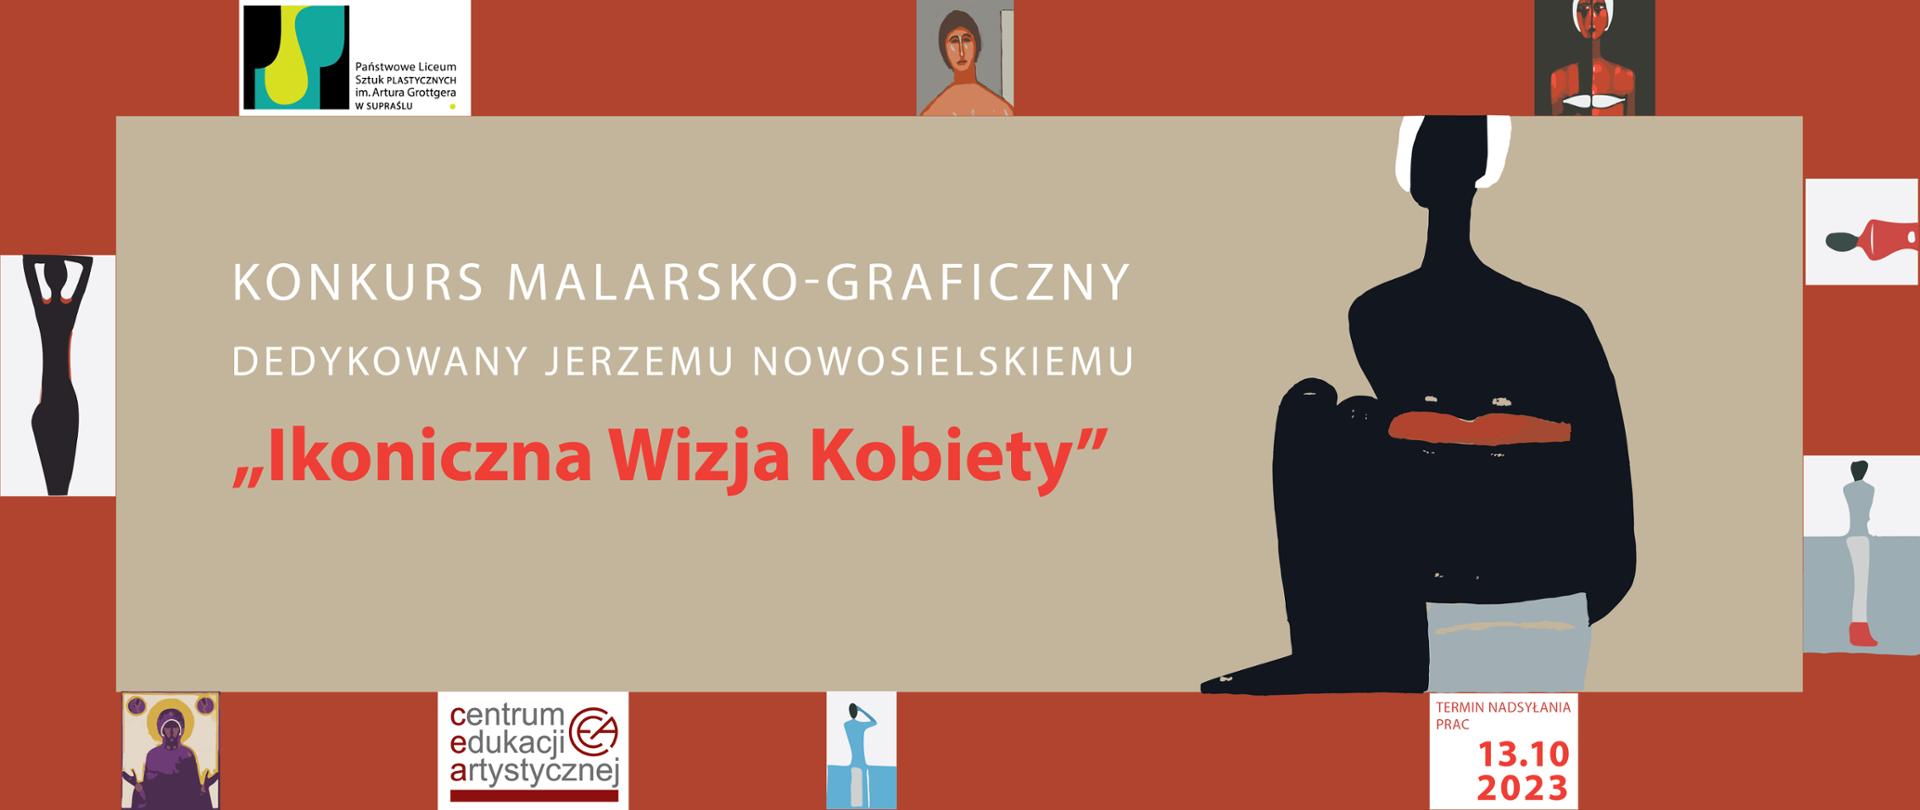 Konkurs malarsko-graficzny dedykowany Jerzemu Nowosielskiemu "Ikoniczna Wizja Kobiety"